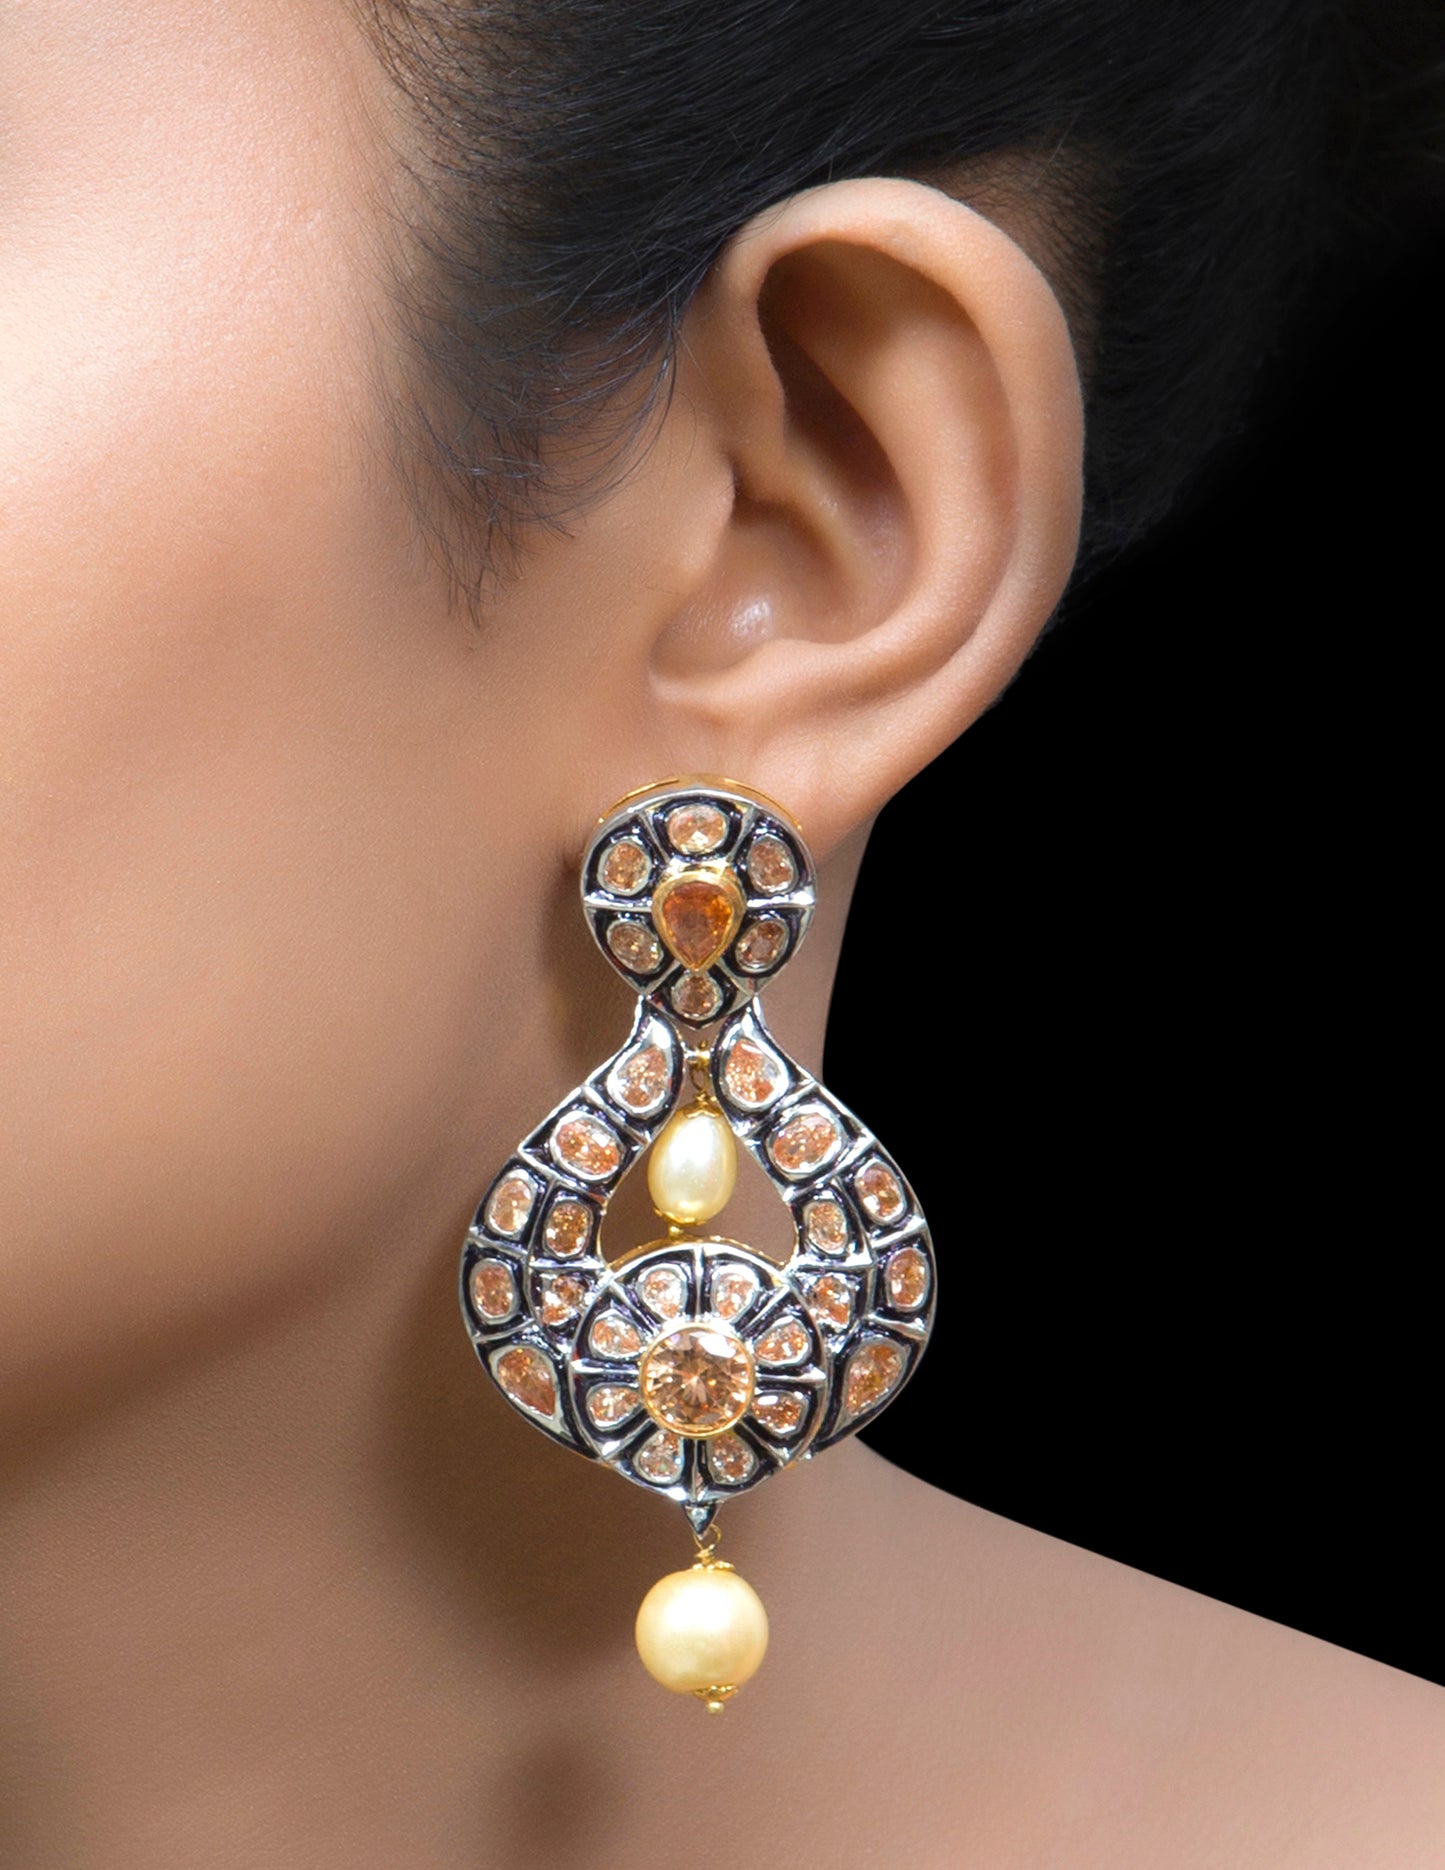 Kundan & meena chandbali earrings with pearl drop